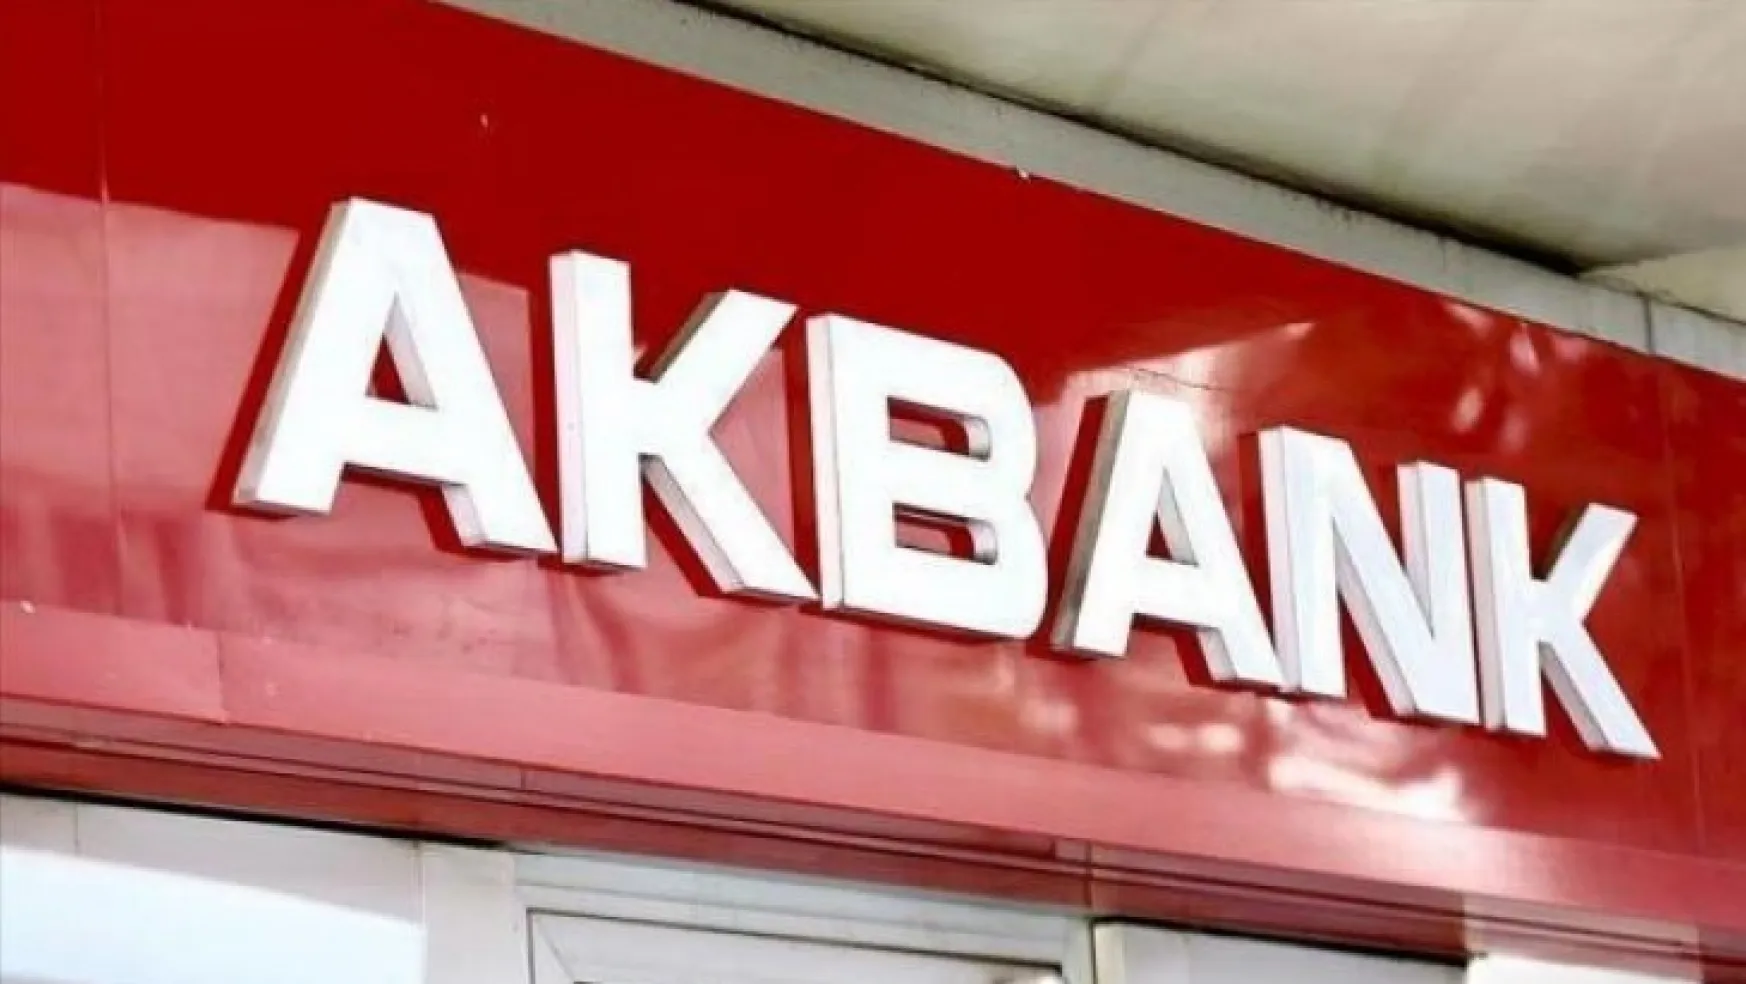 Akbank'tan müşteri bilgilerinin çalındığı iddialarına yalanlama